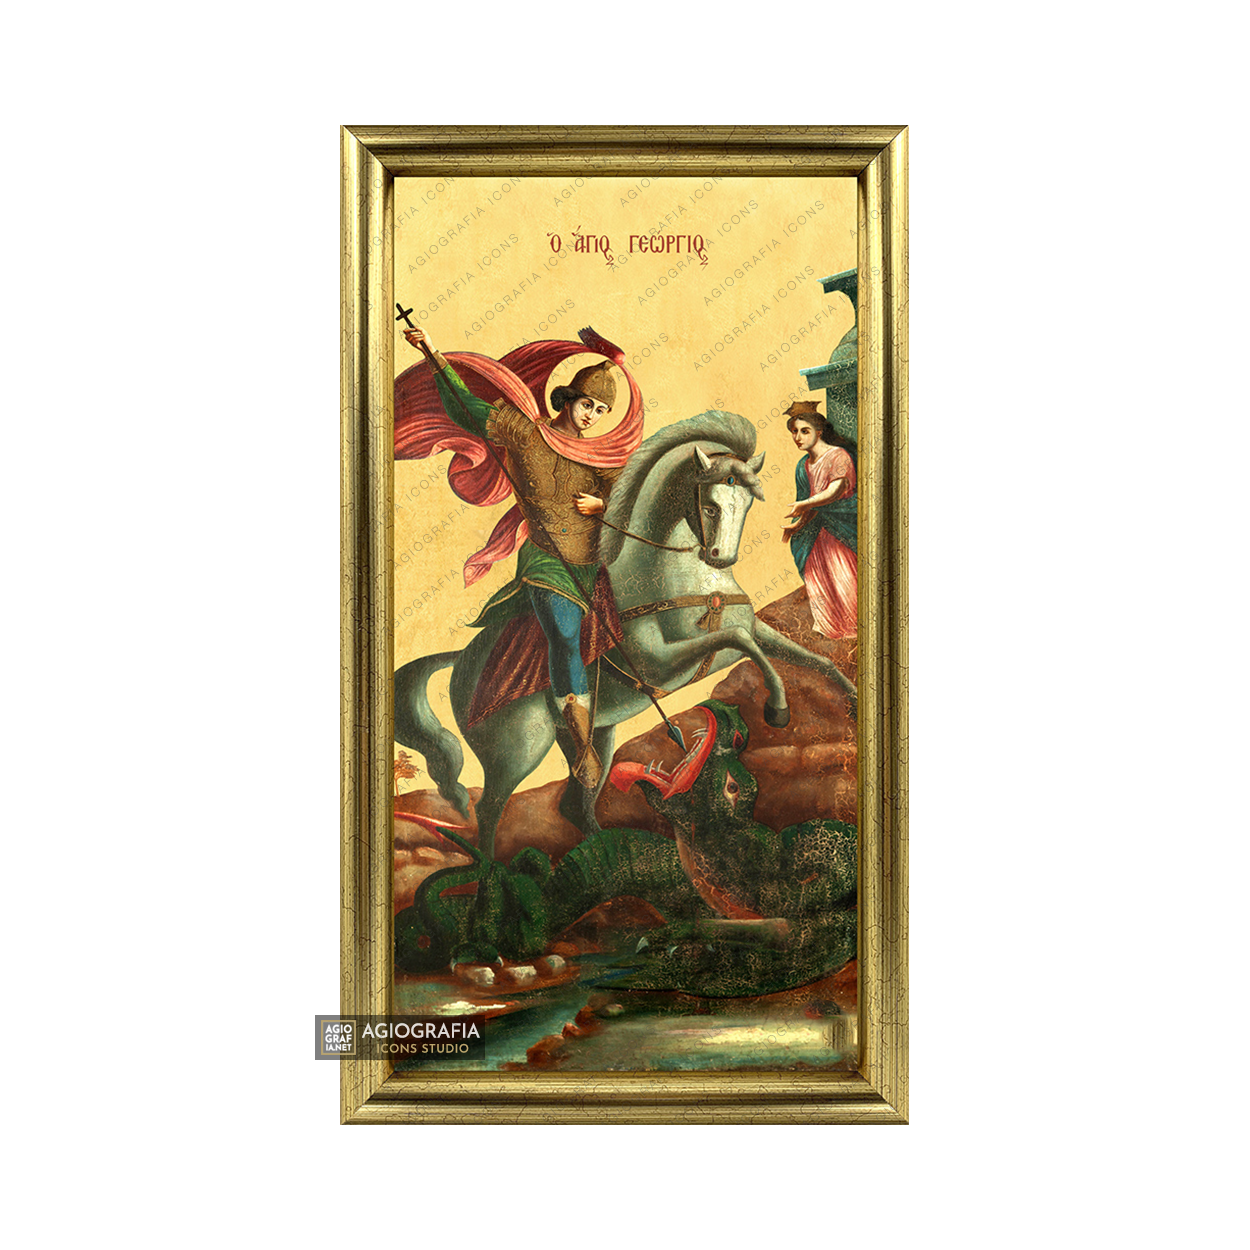 22k St George on horseback Framed Christian Icon with Gold Leaf